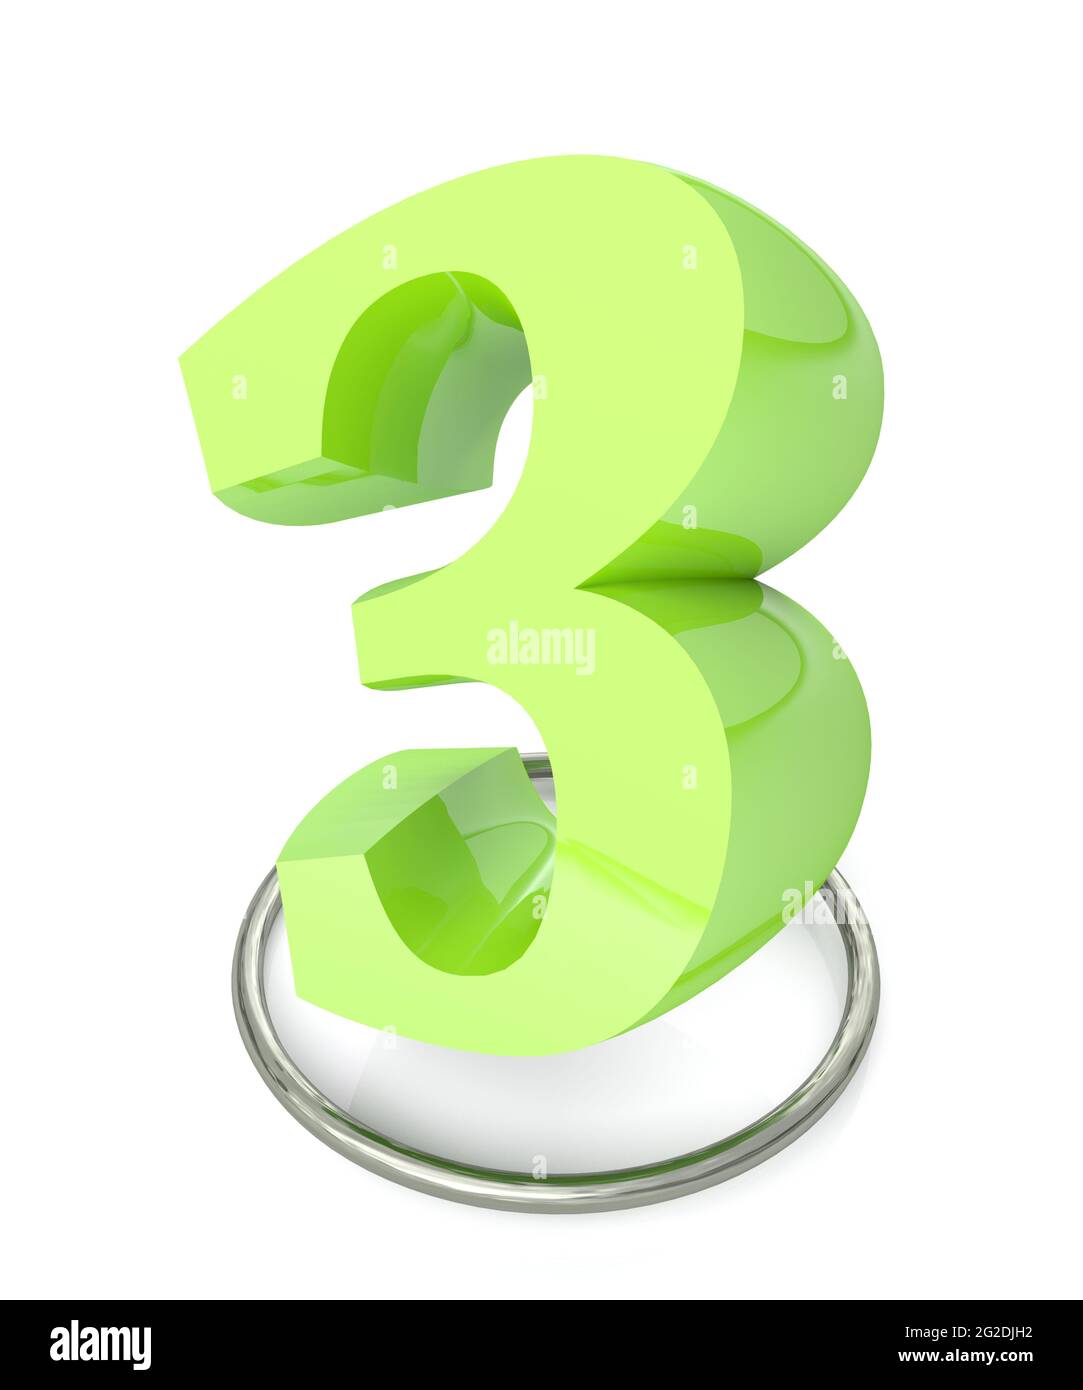 Numéro 3 vert sur cercle métallique sur fond blanc - illustration du rendu 3D Banque D'Images